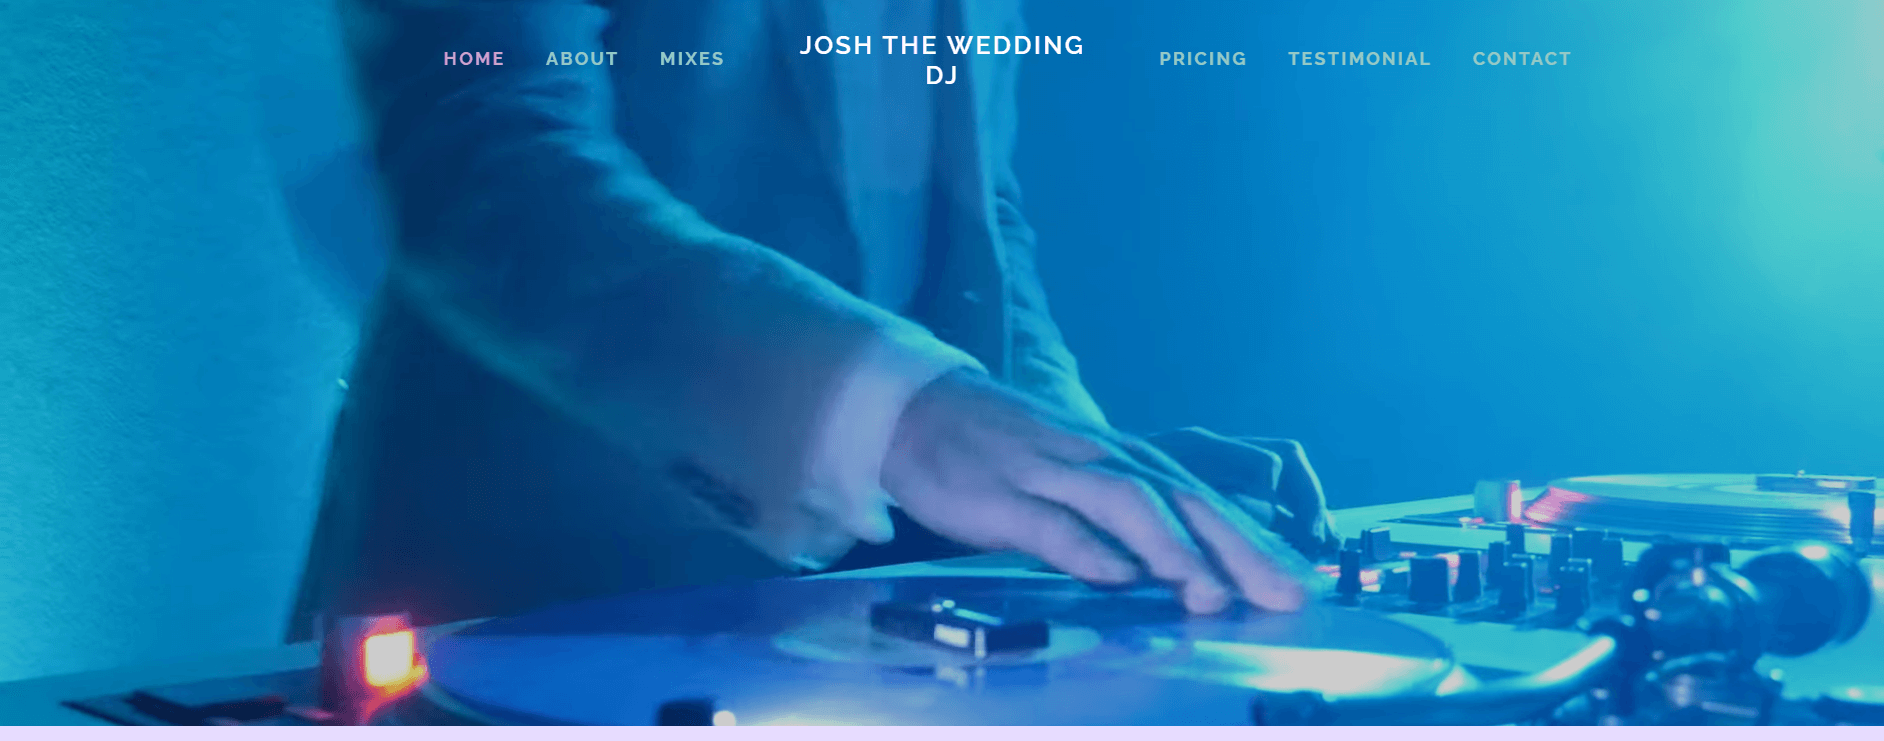 josh the wedding dj